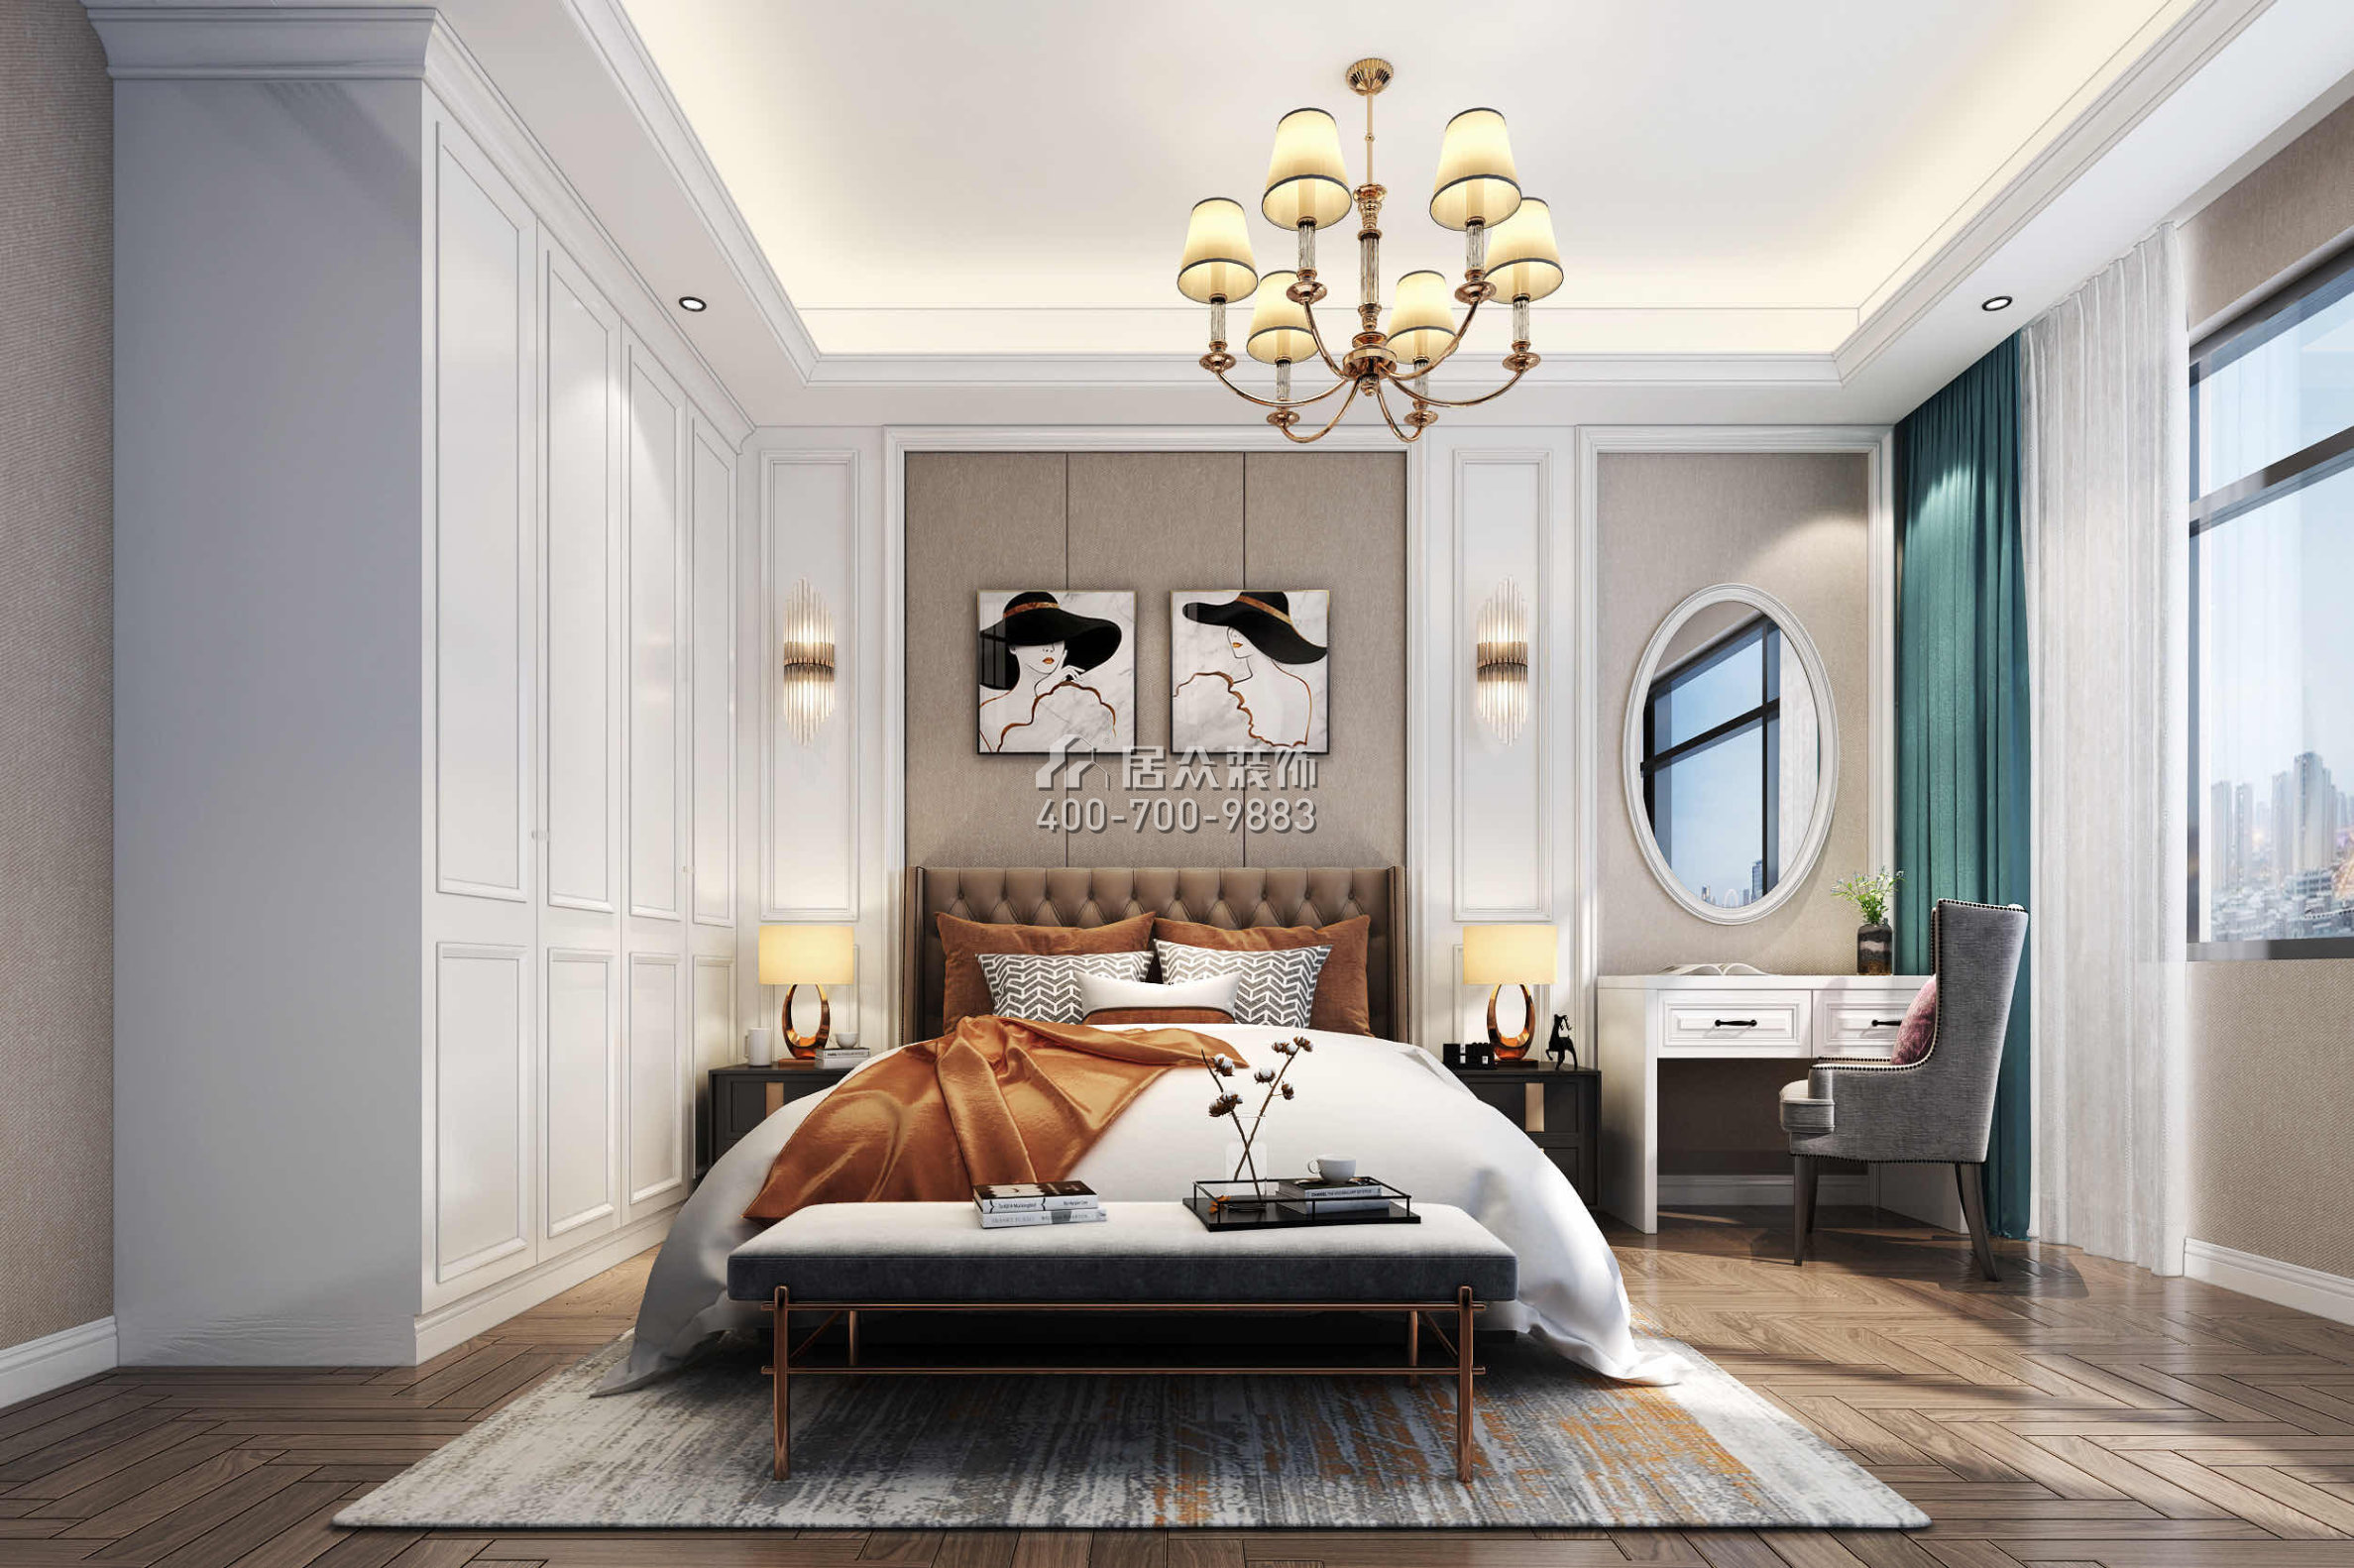 远洋繁花里265平方米欧式风格别墅户型卧室装修效果图